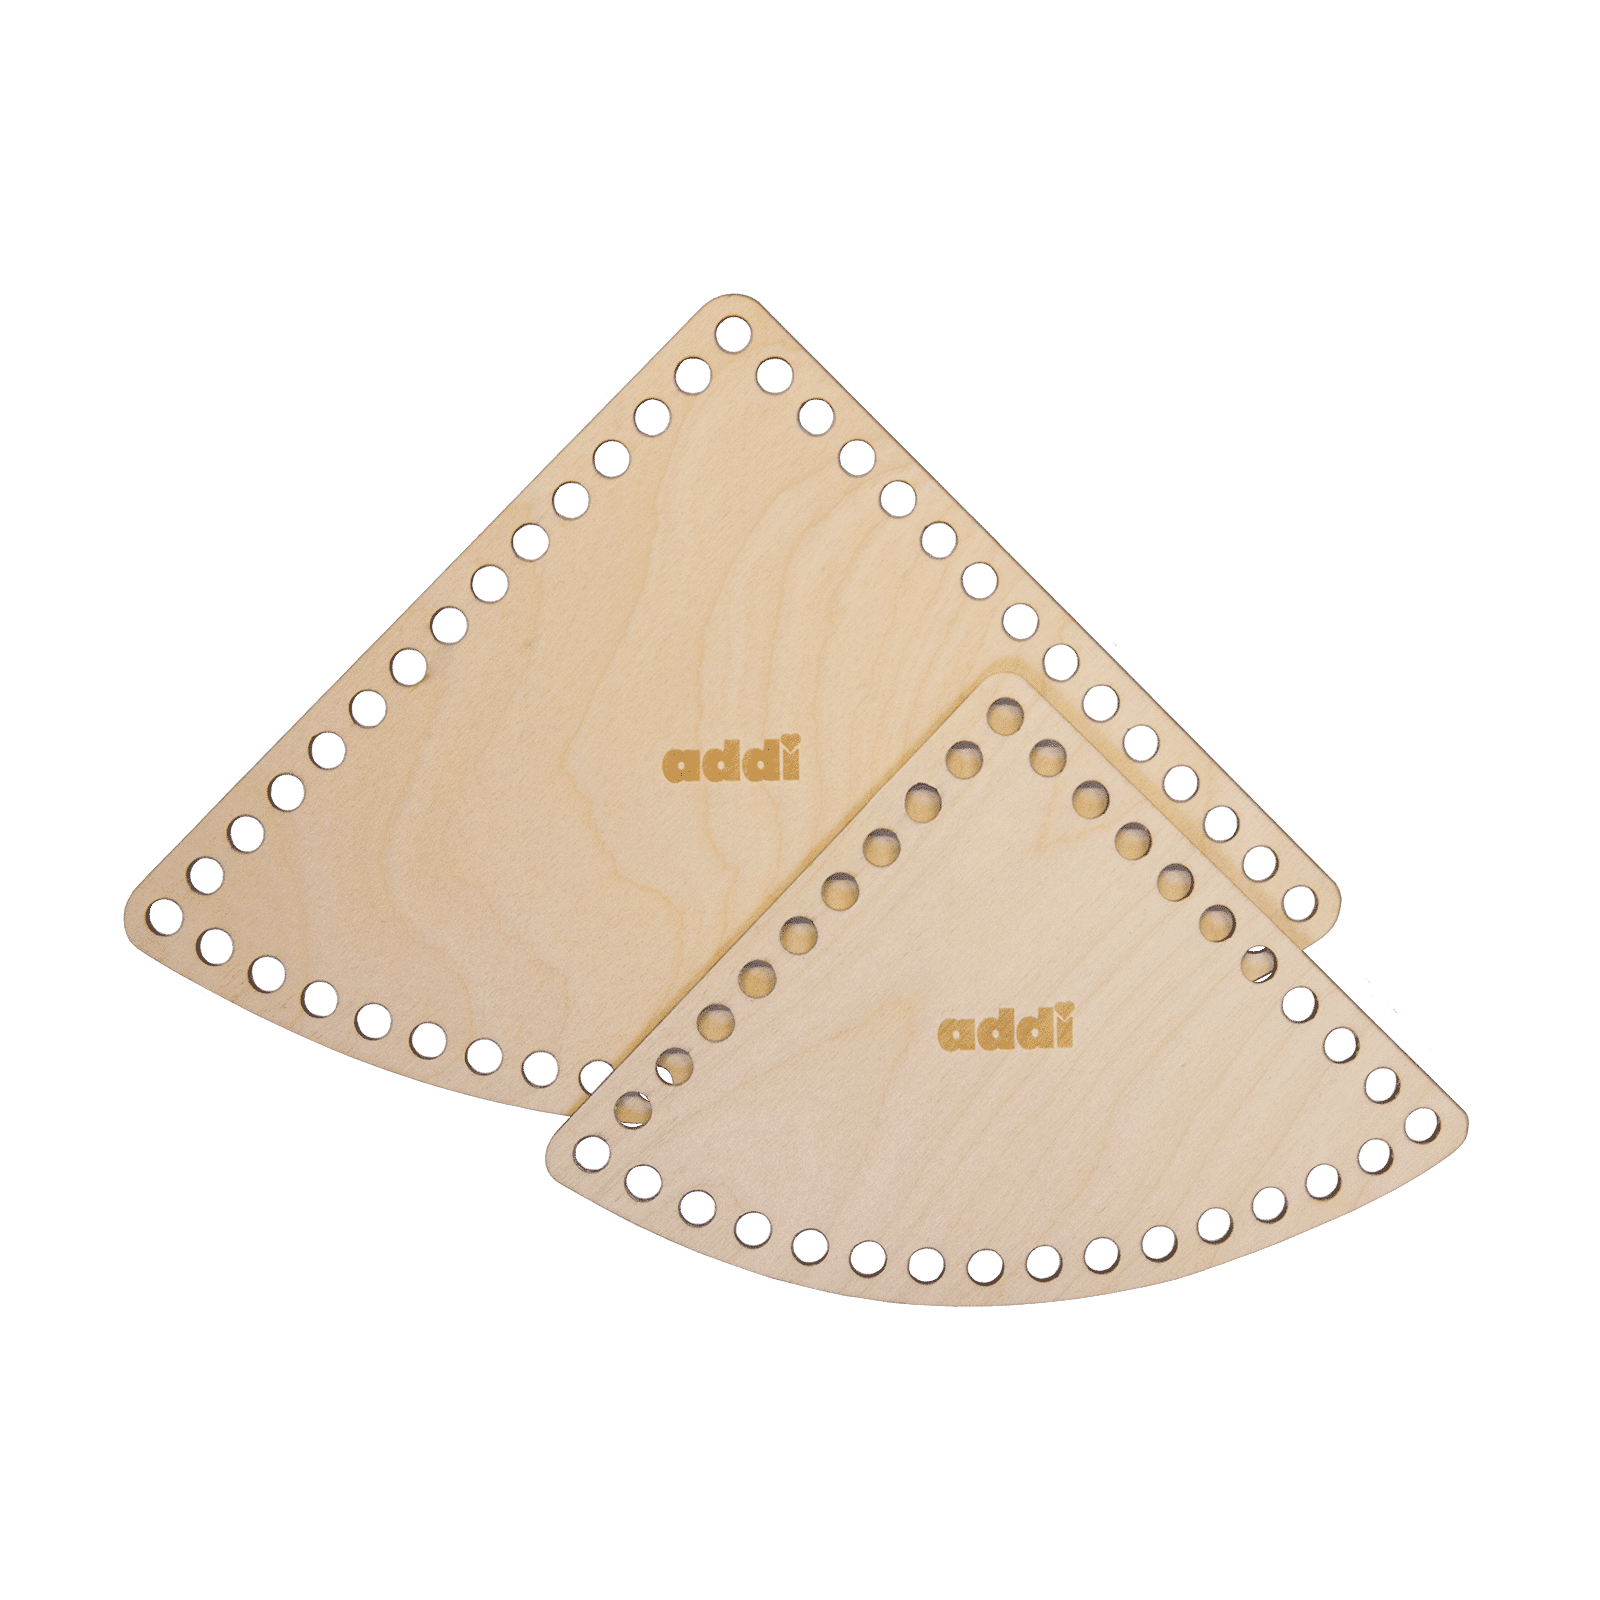 537 2 addiShapes triangle Korbboeden dreieck frei rgb Magazin,Inspiration,Stricken,Häkeln